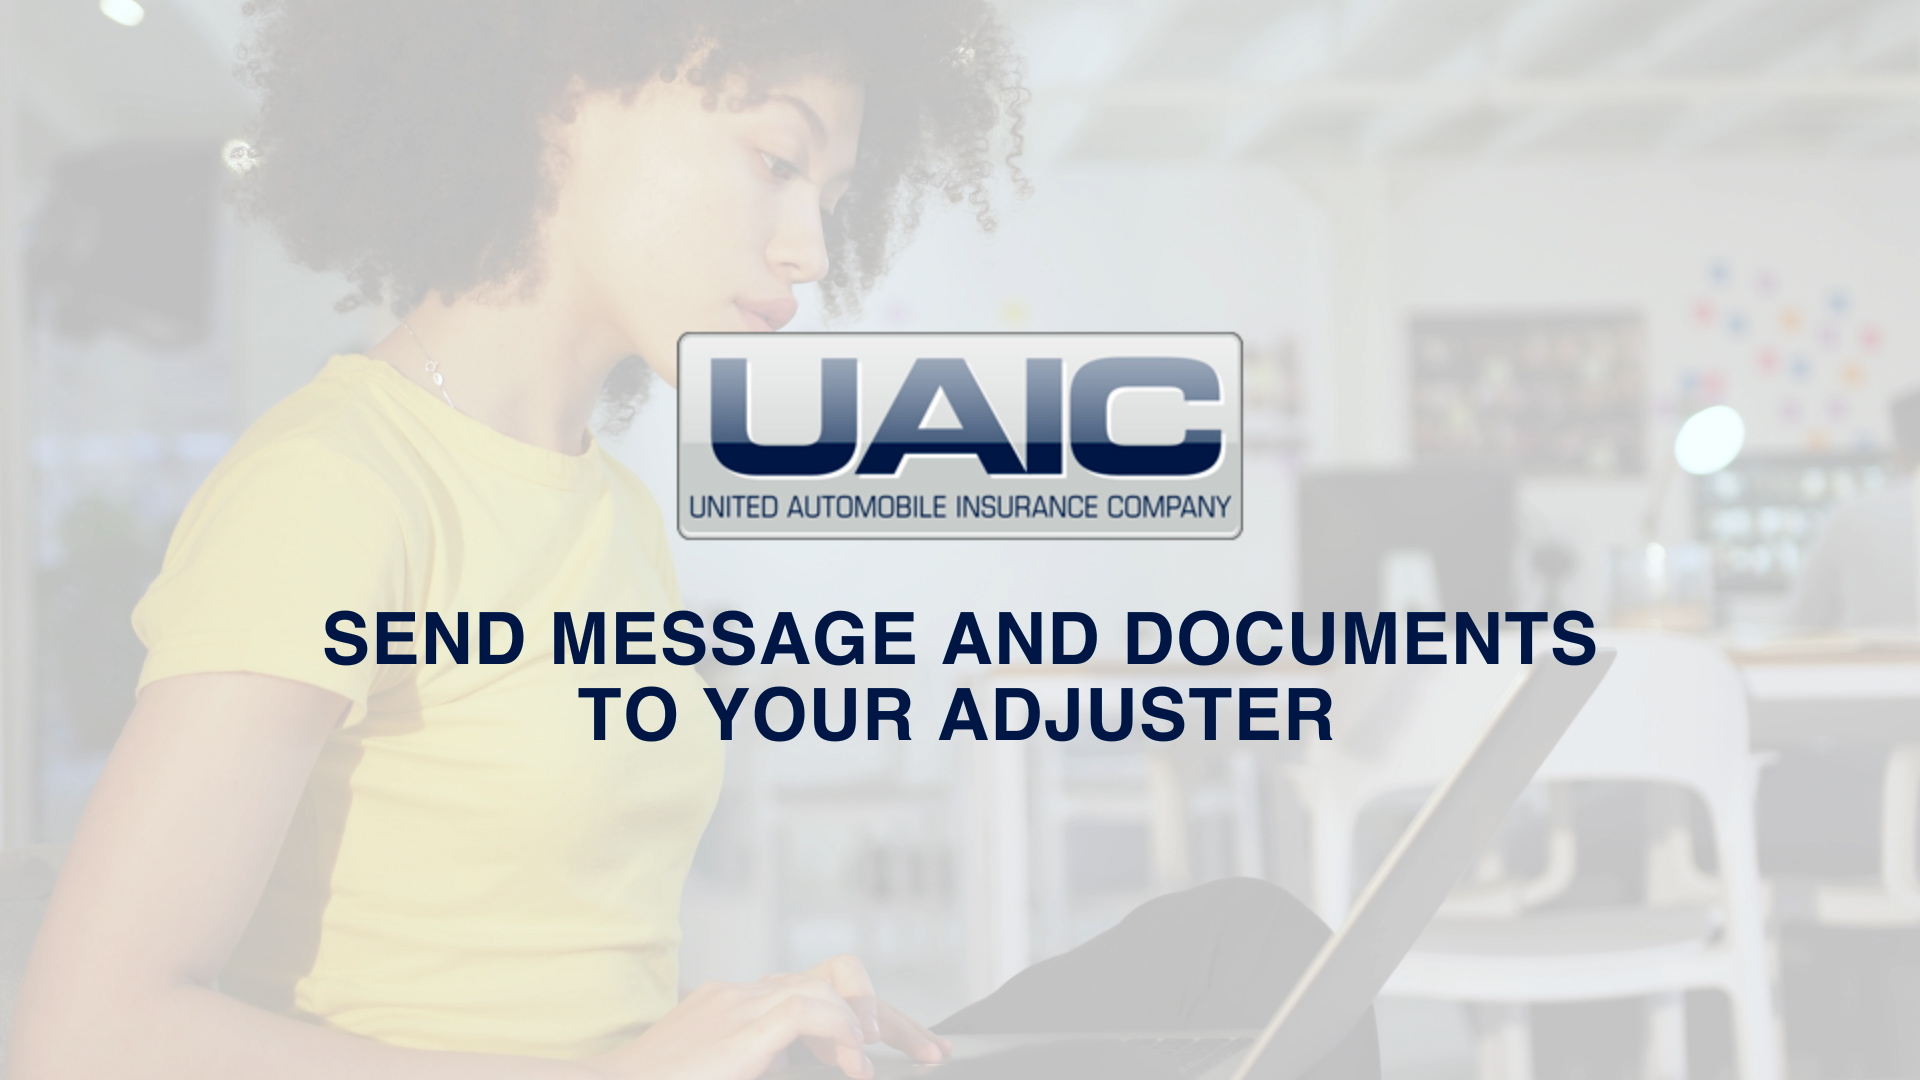 UAIC, United Auto, United Automobile Insurance Company